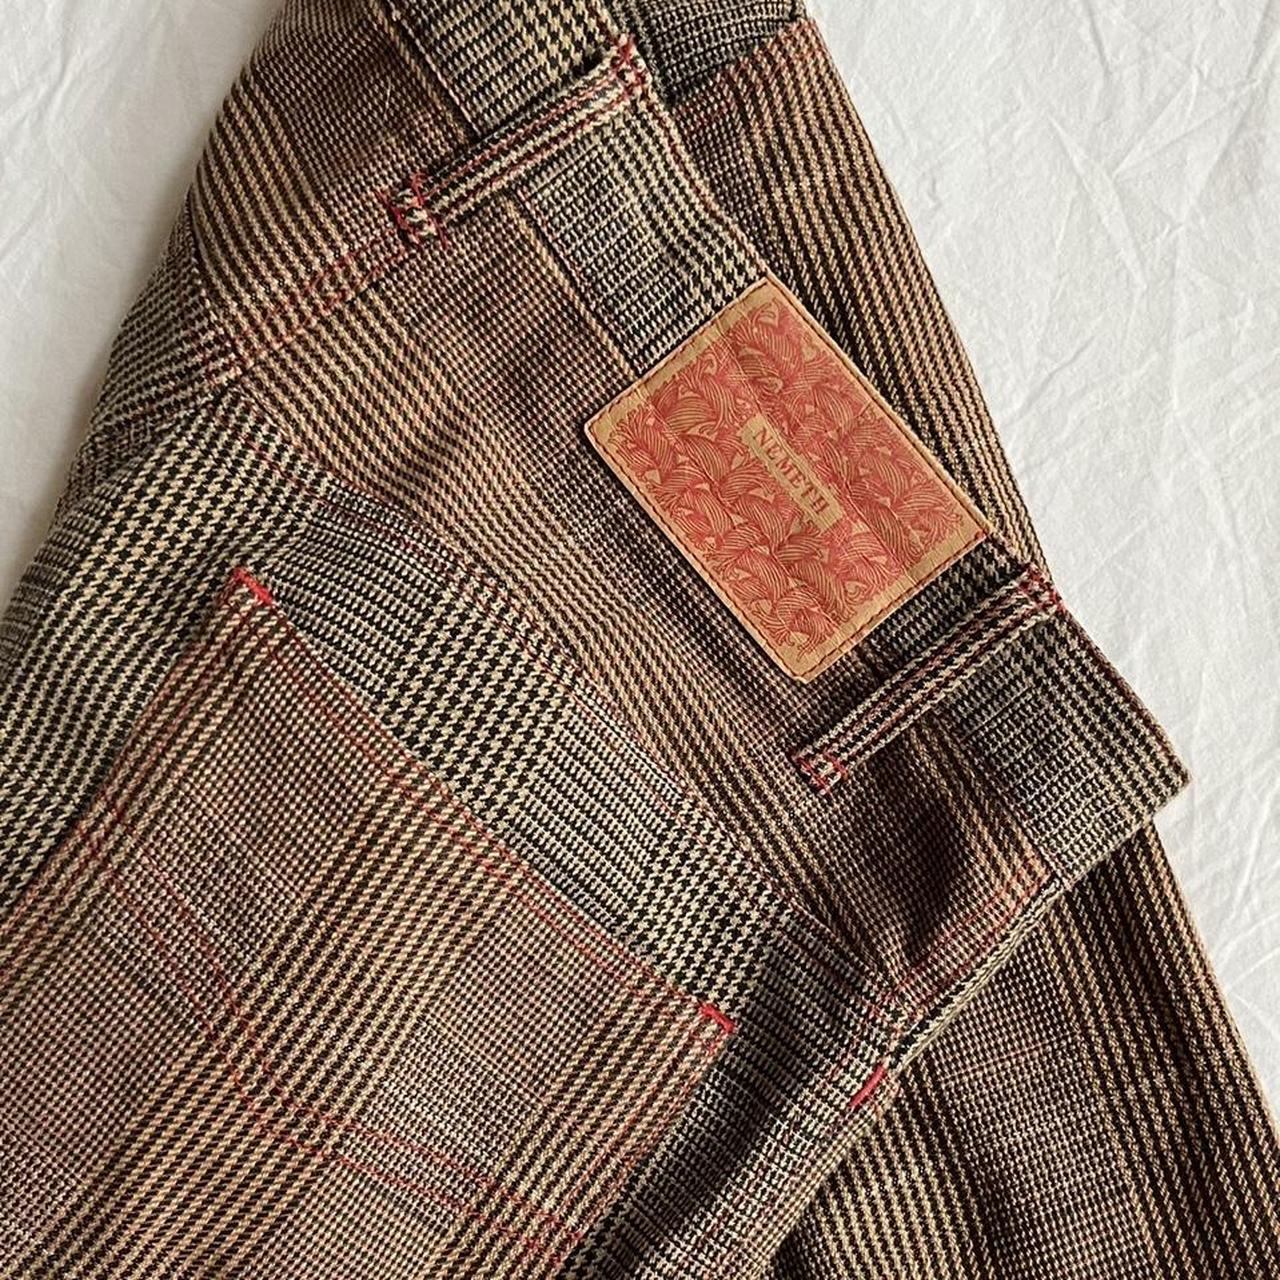 qoqshoq 90s Vintage Christopher Nemeth Trousers